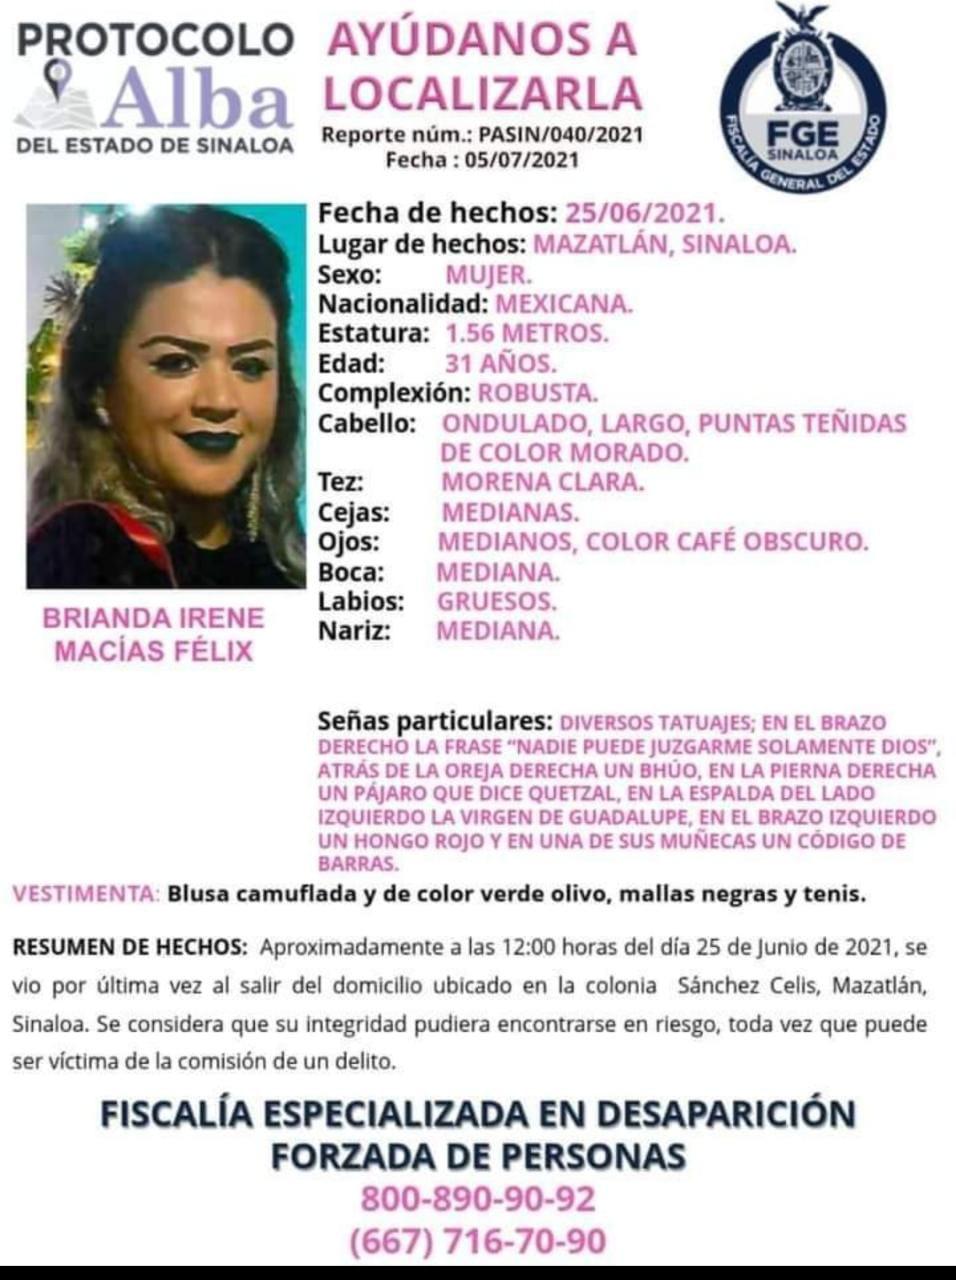 $!En Mazatlán hay más de 20 mujeres desaparecidas, señala colectivo